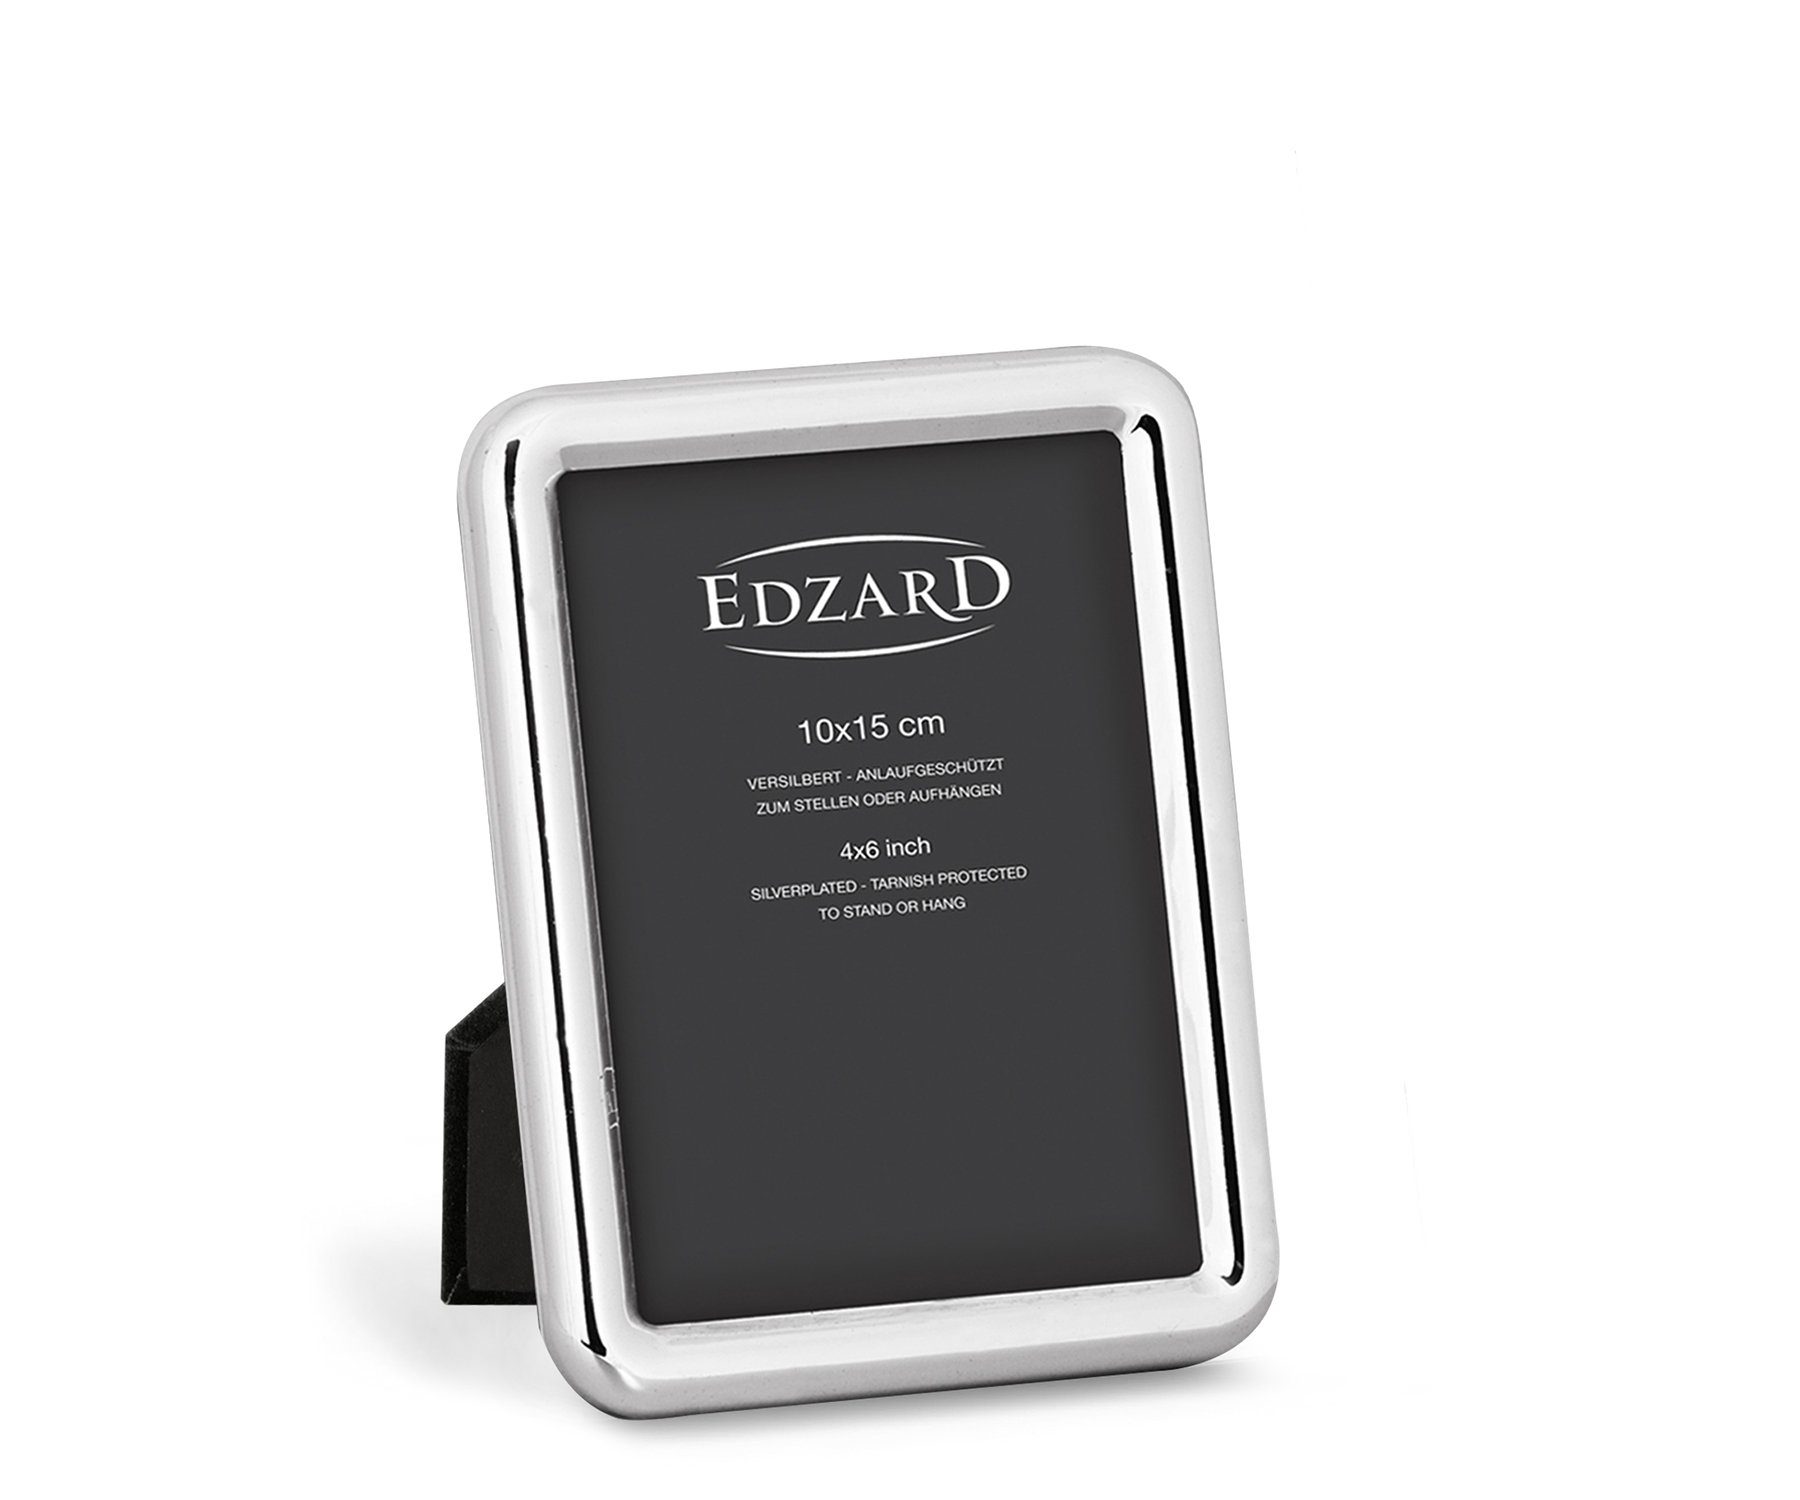 EDZARD Bilderrahmen Como, versilbert und anlaufgeschützt, für 10x15 cm Foto